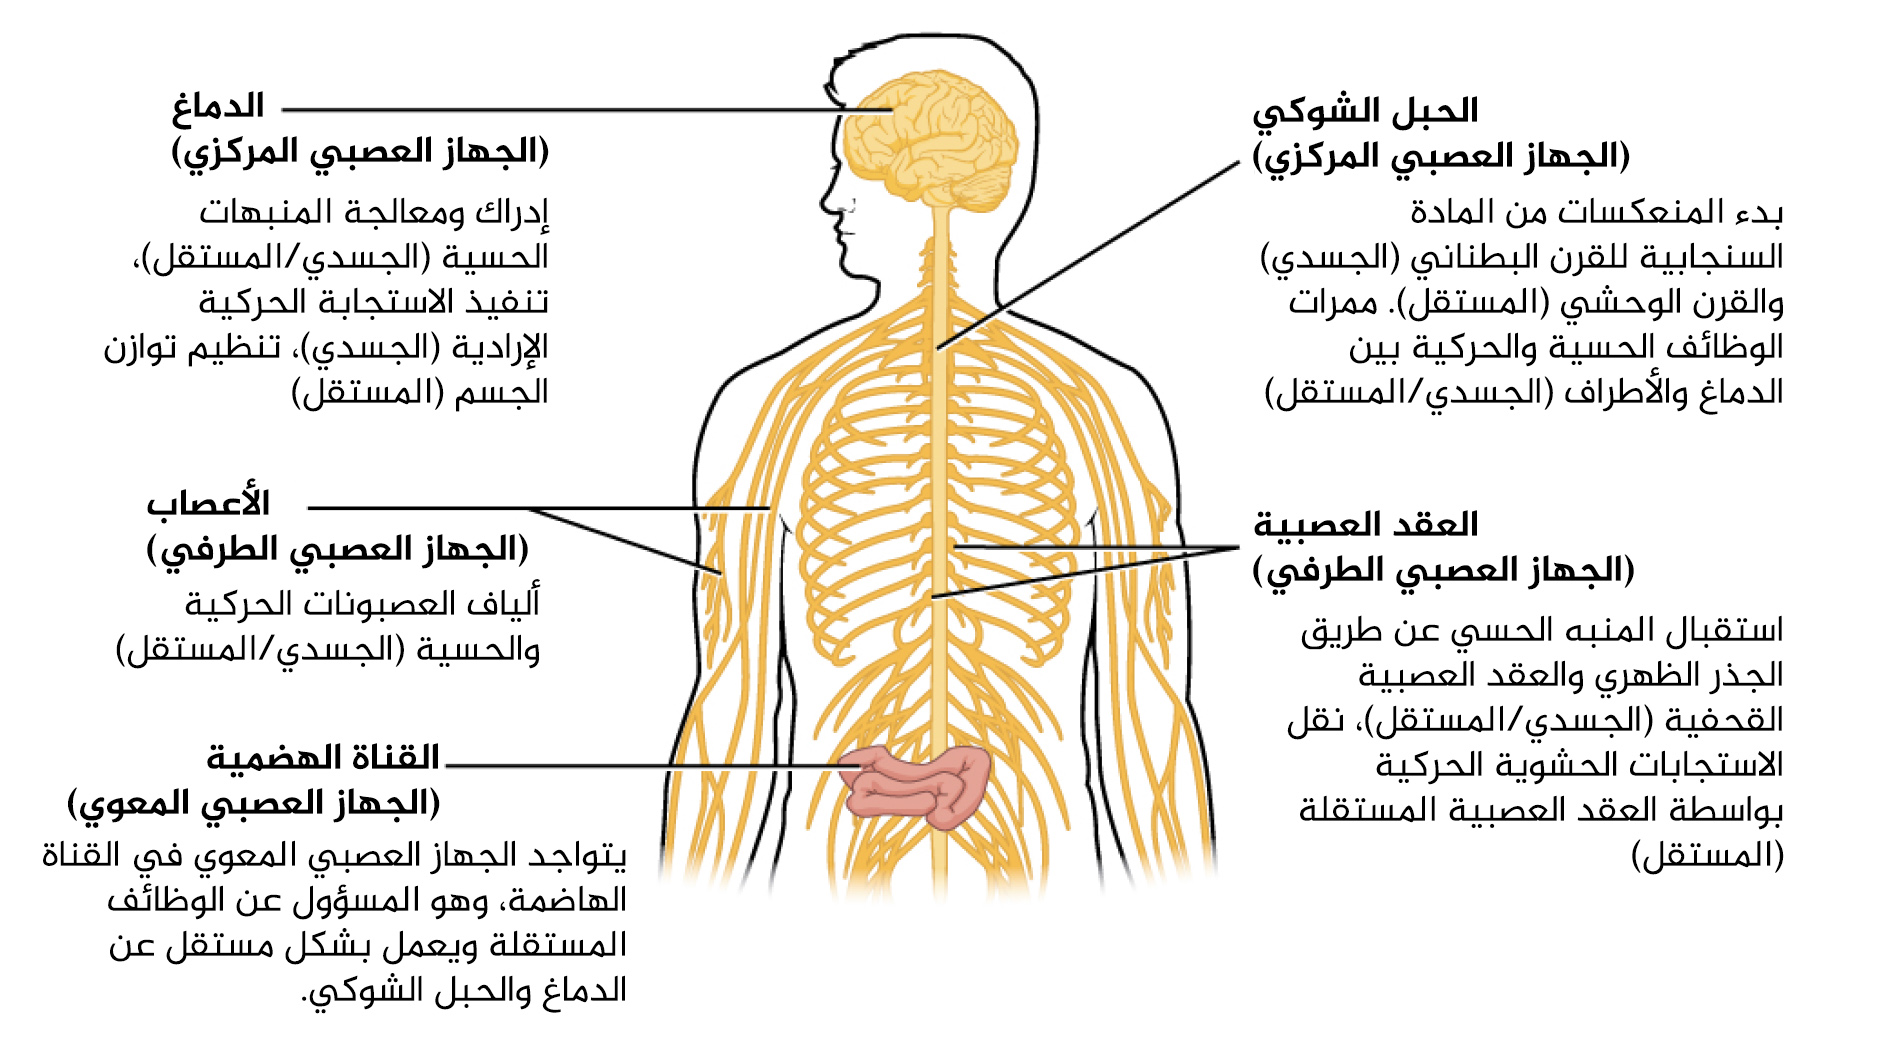 رسم يشرح الجهاز العصبي بالعربية.